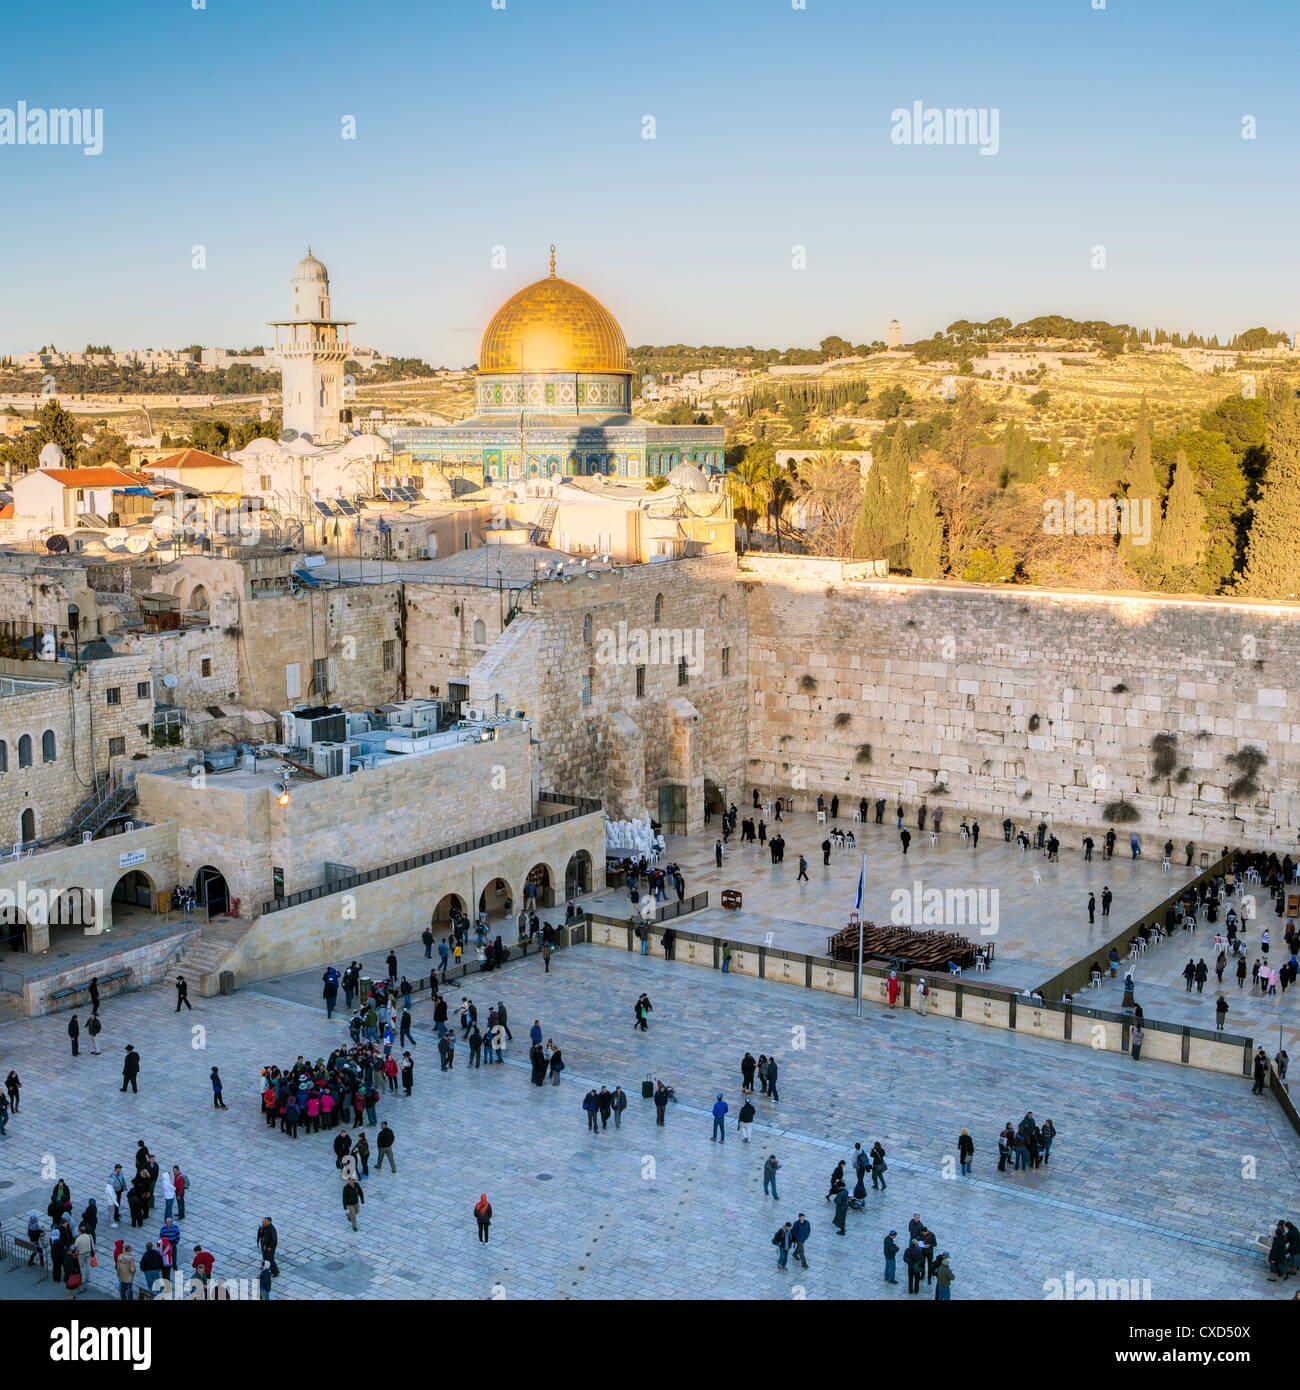 Quartier juif de la place du Mur occidental, Vieille Ville, site du patrimoine mondial de l'UNESCO, Jérusalem, Israël, Moyen Orient Banque D'Images